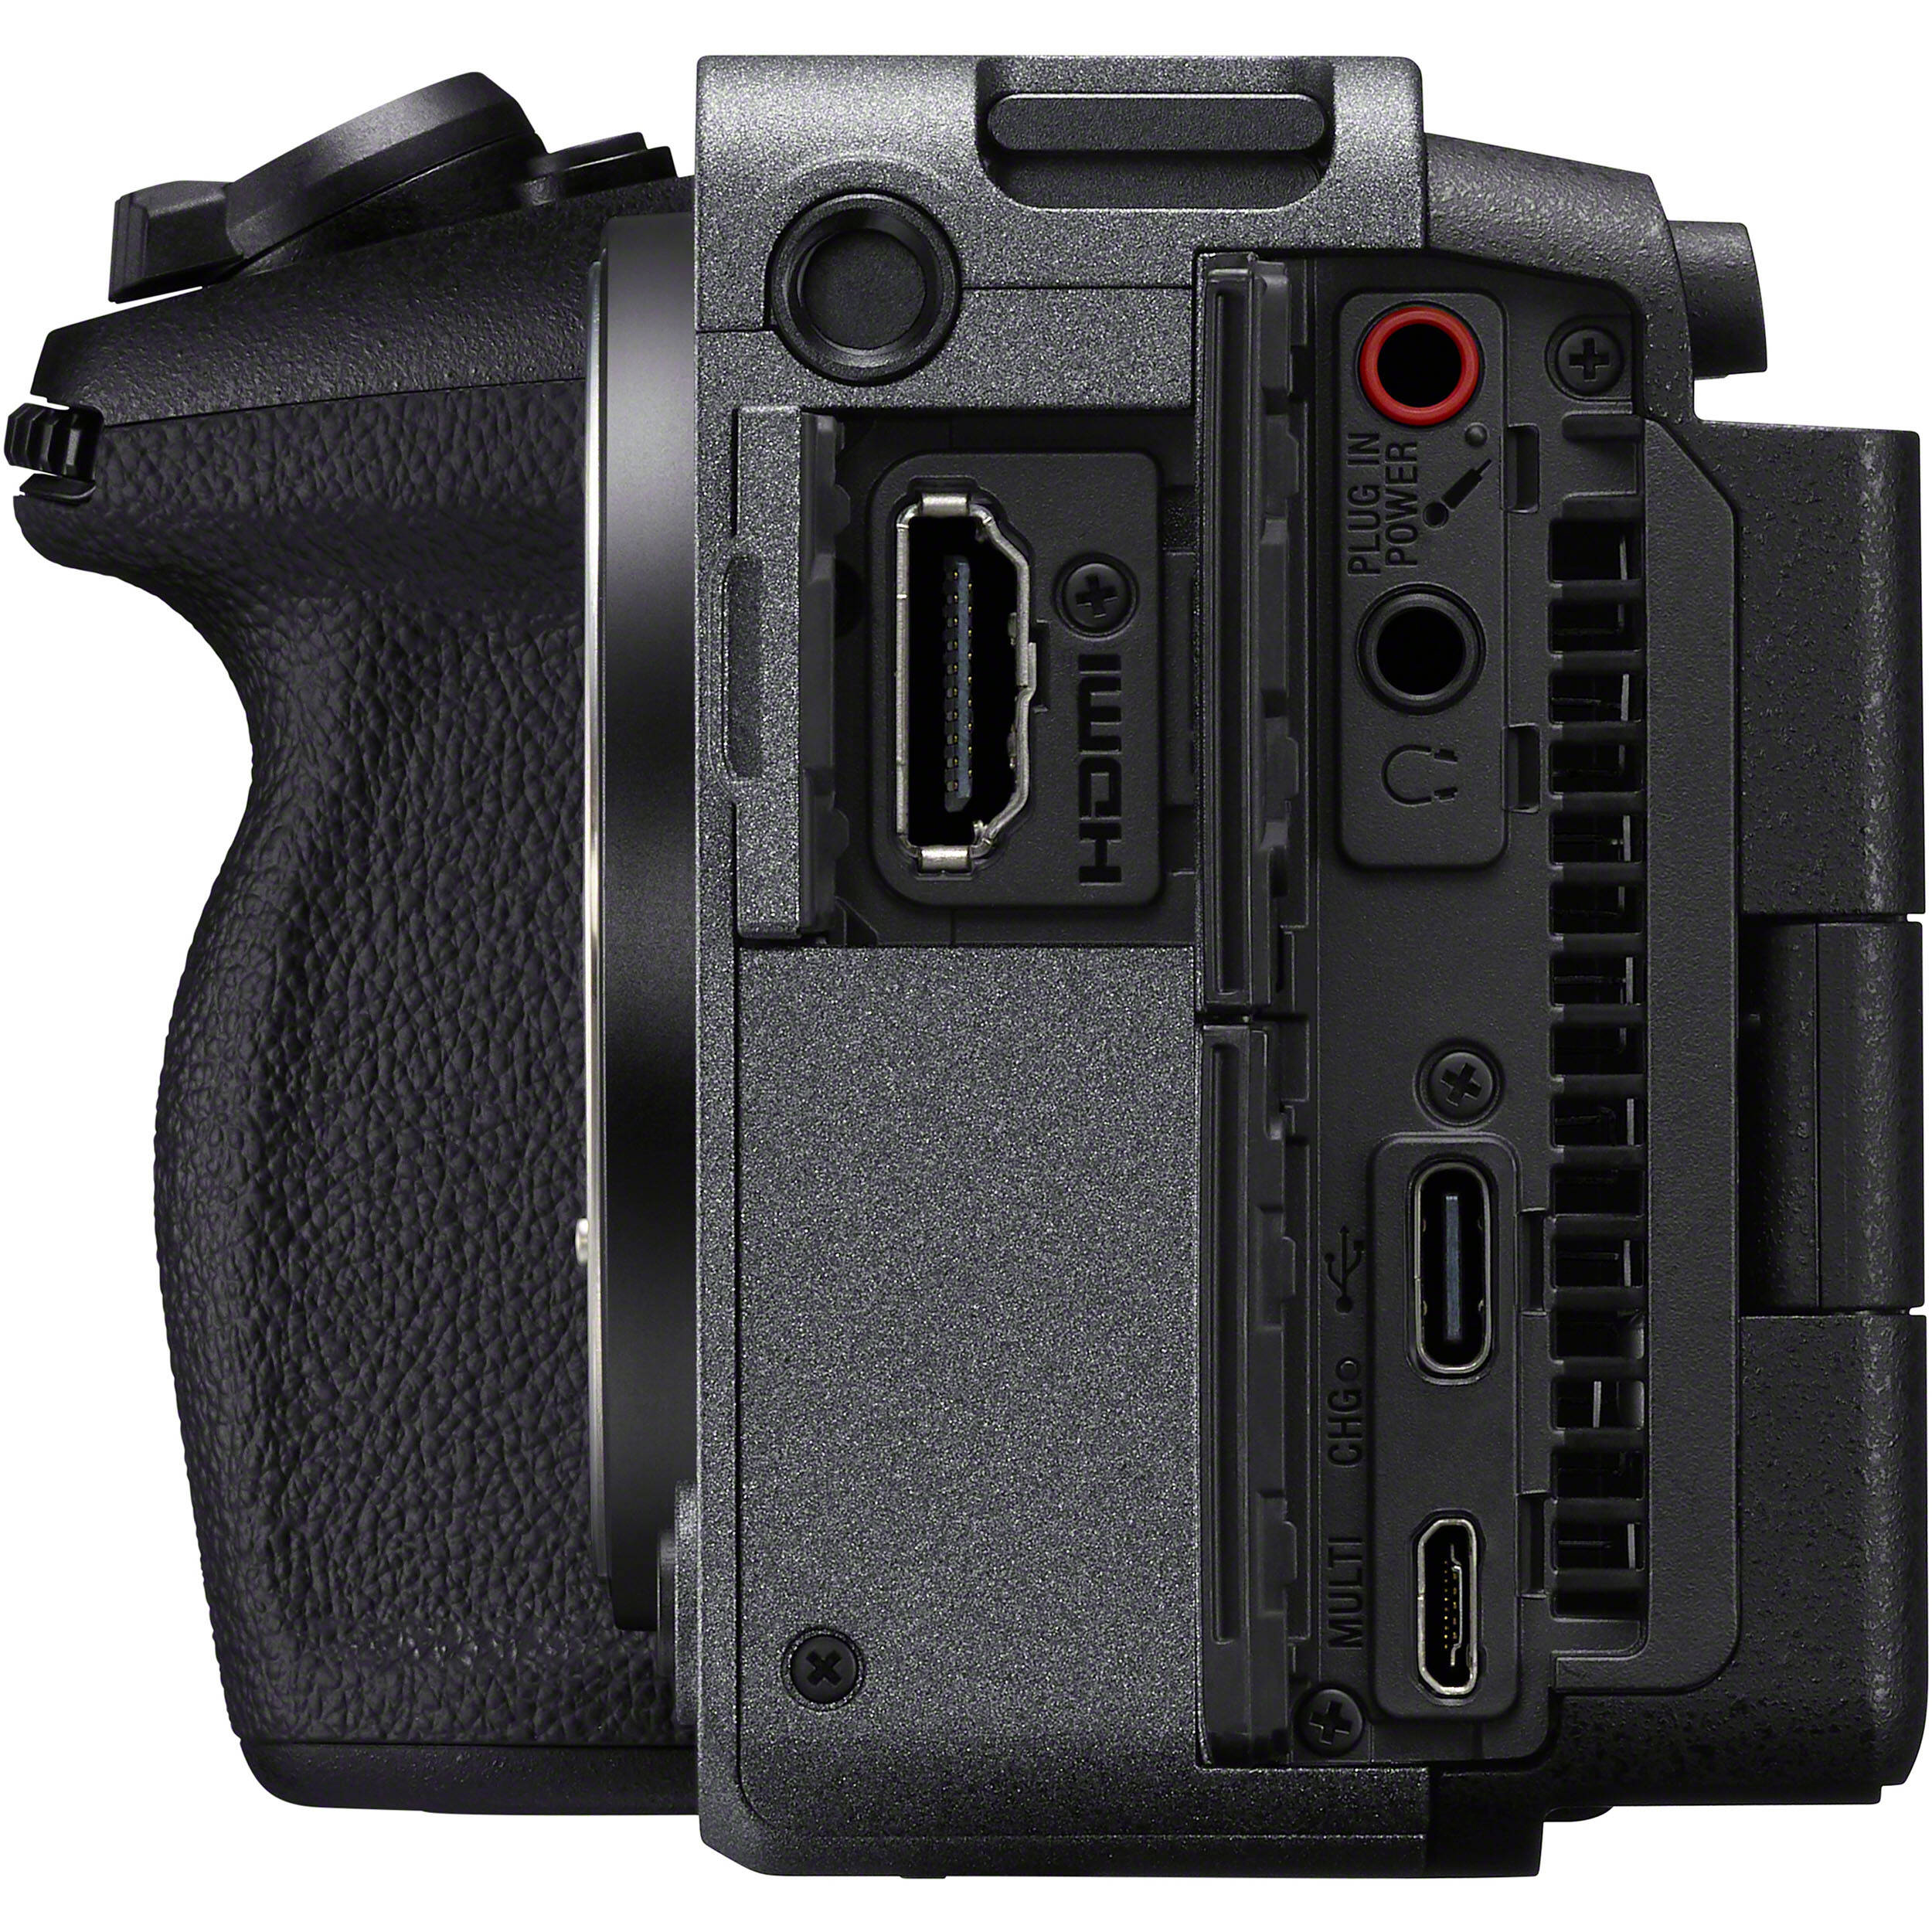 Caméra de cinéma numérique Sony FX30